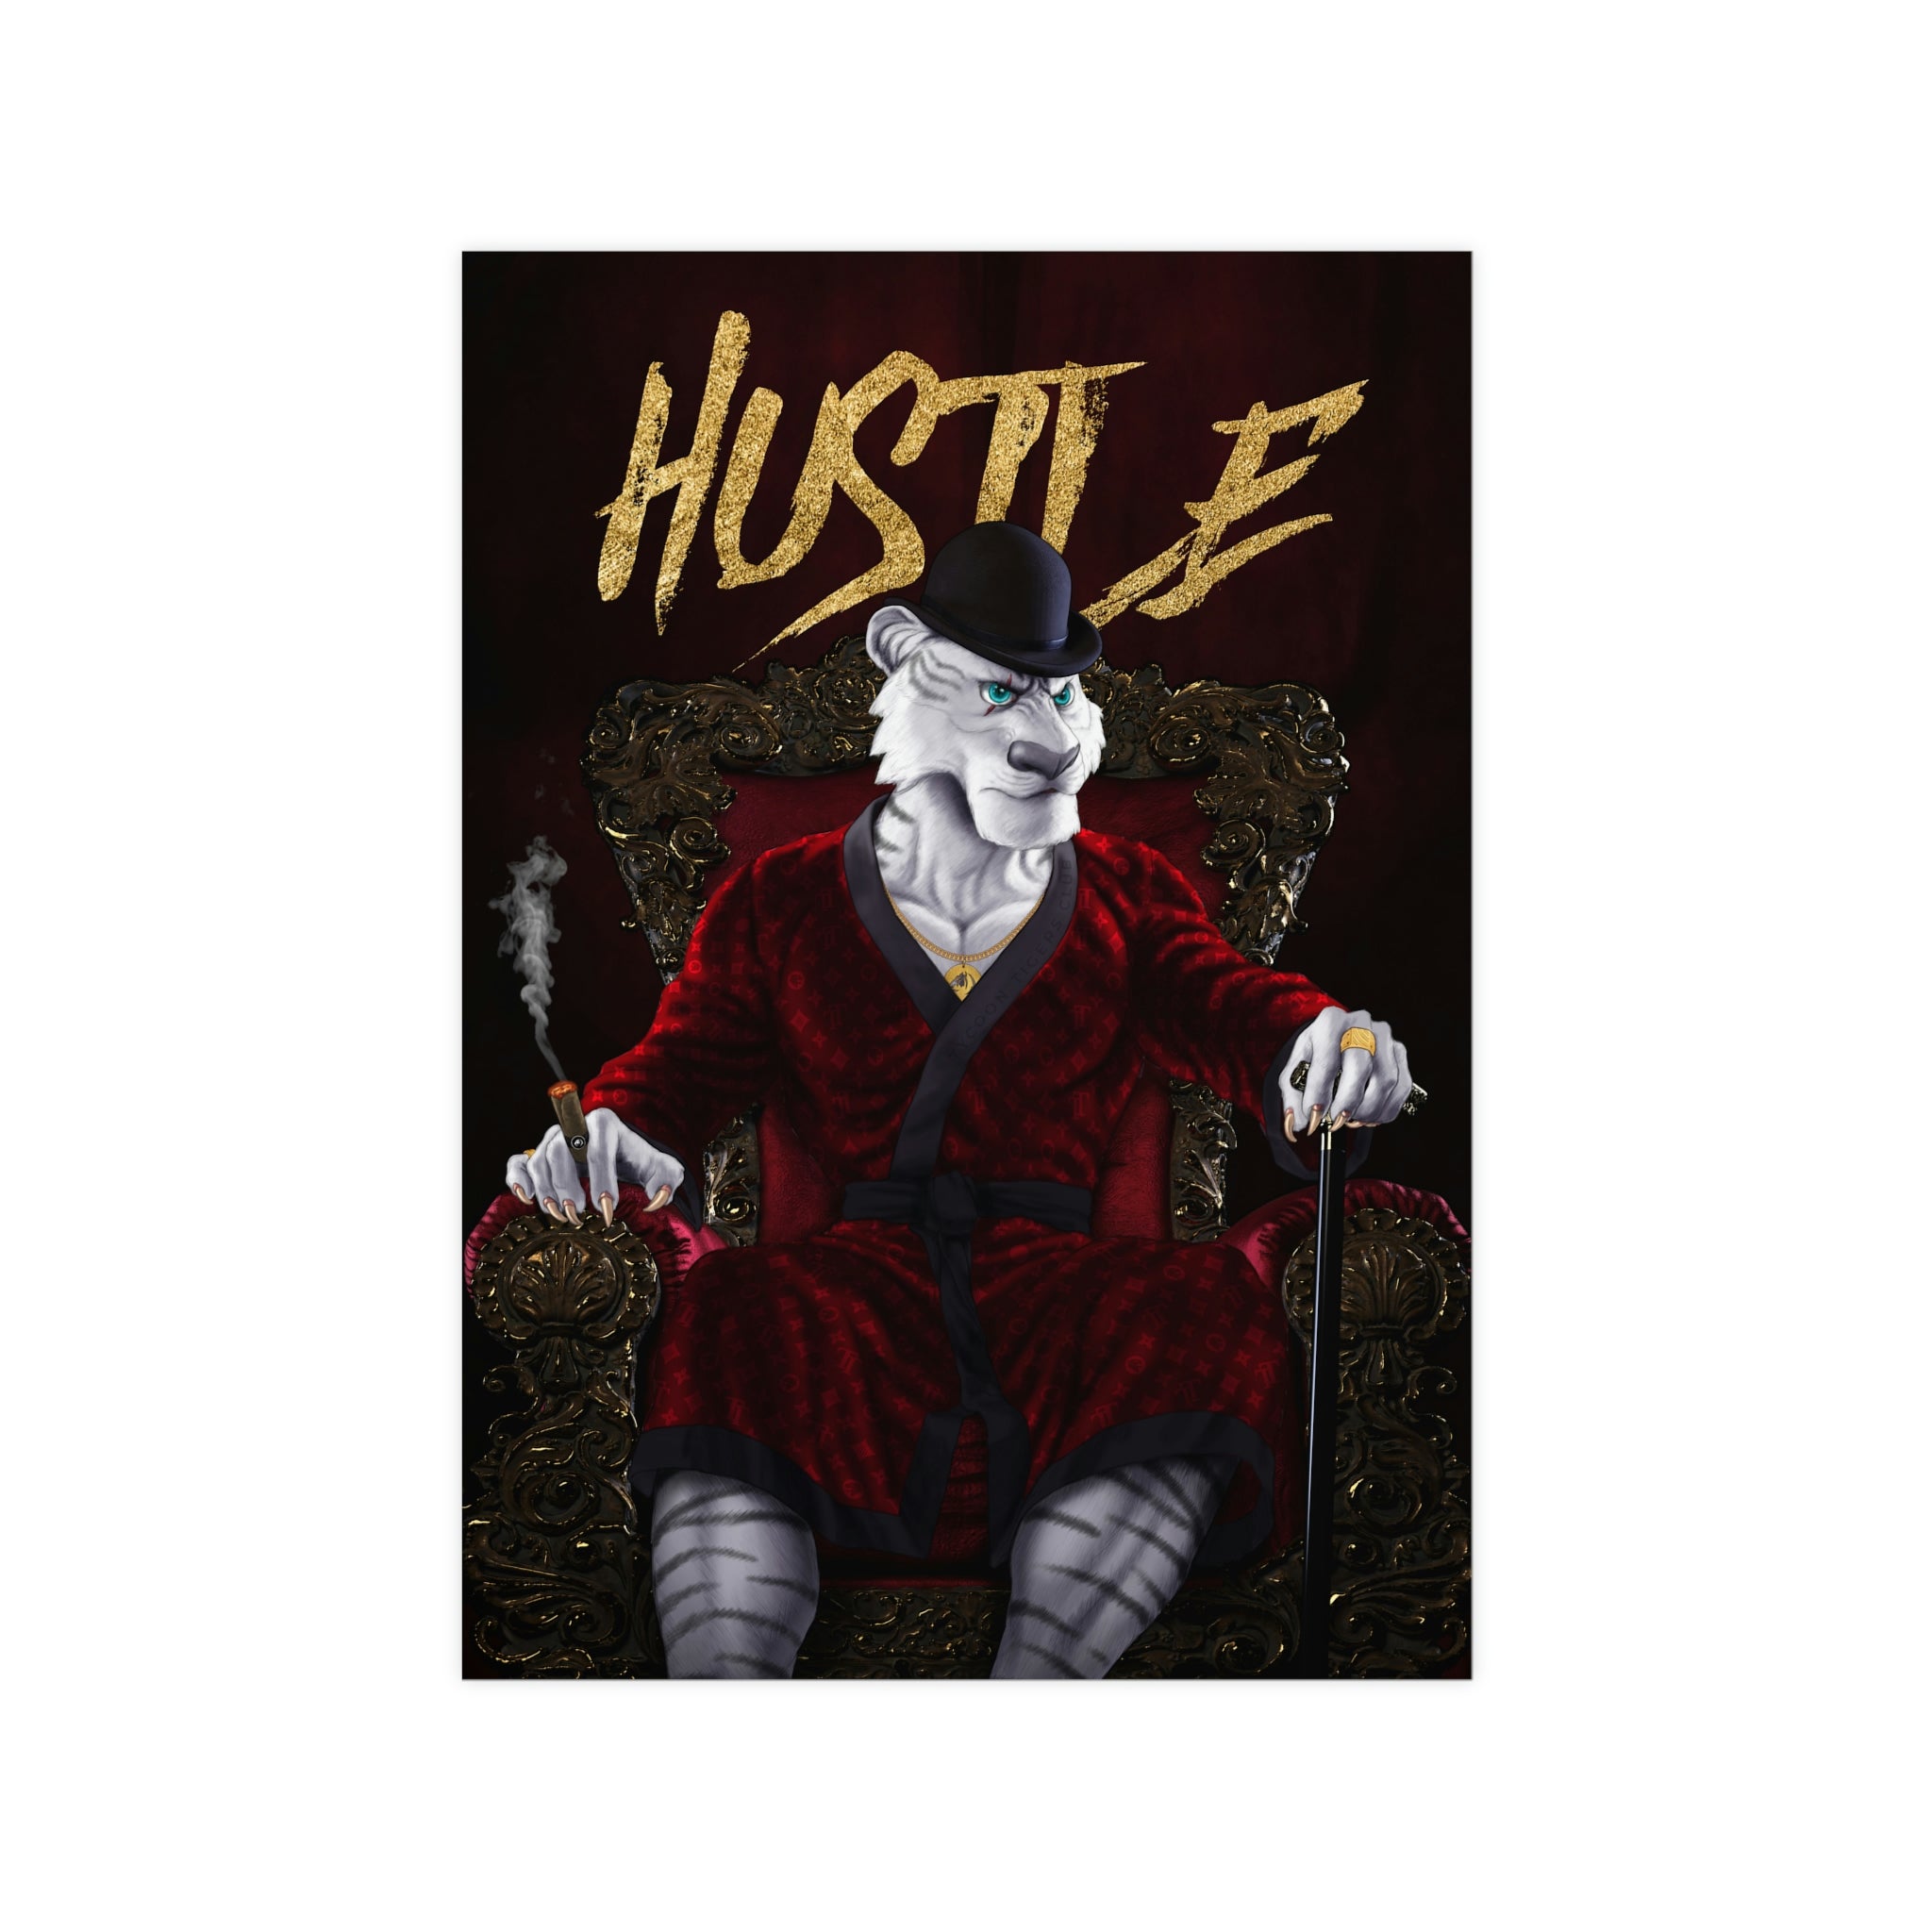 Hustle - Poster